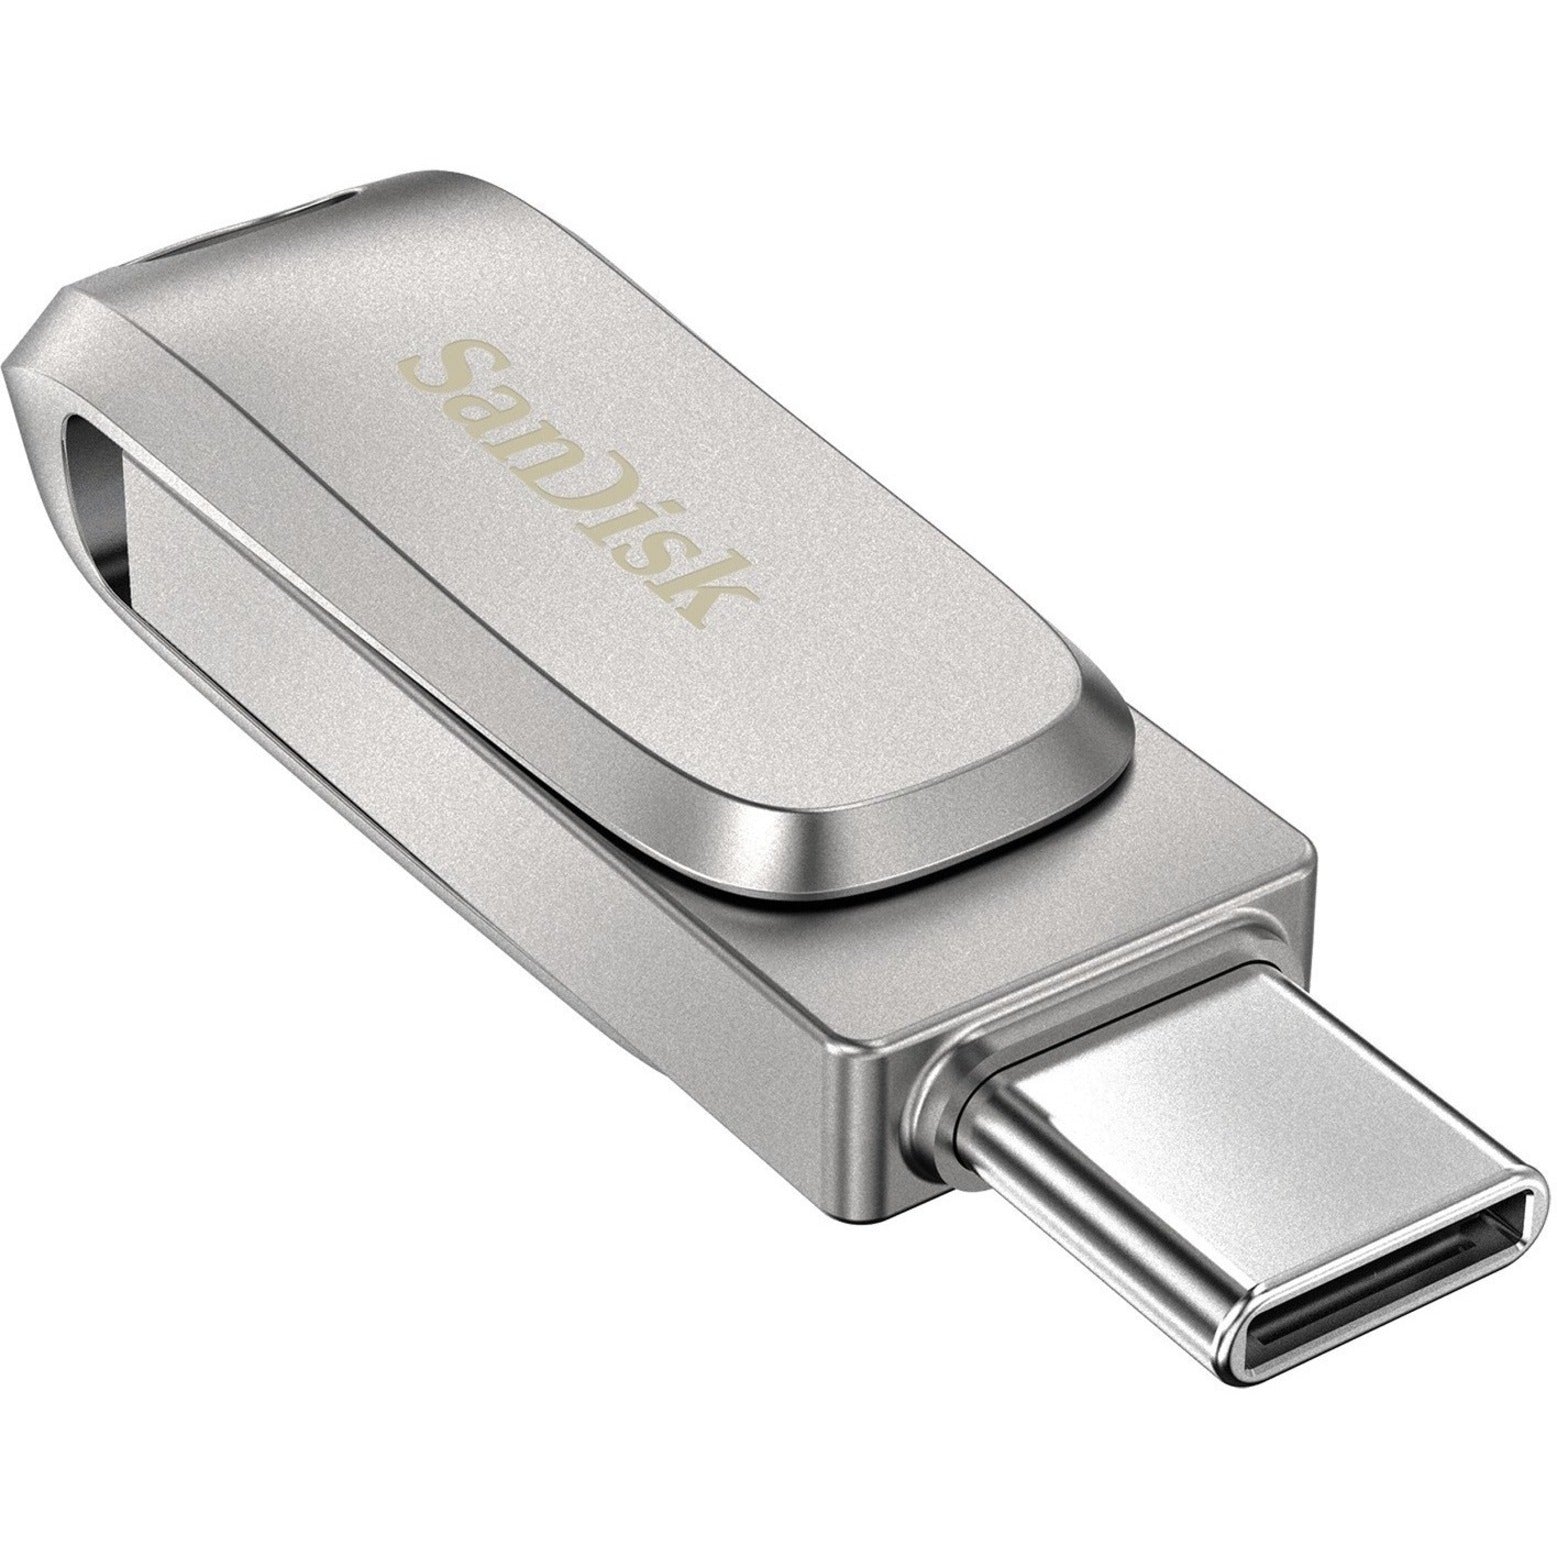 SanDisk Ultra Dual Drive Luxe USB Type-C - 128GB Transferencia de Datos y Almacenamiento de Alta Velocidad